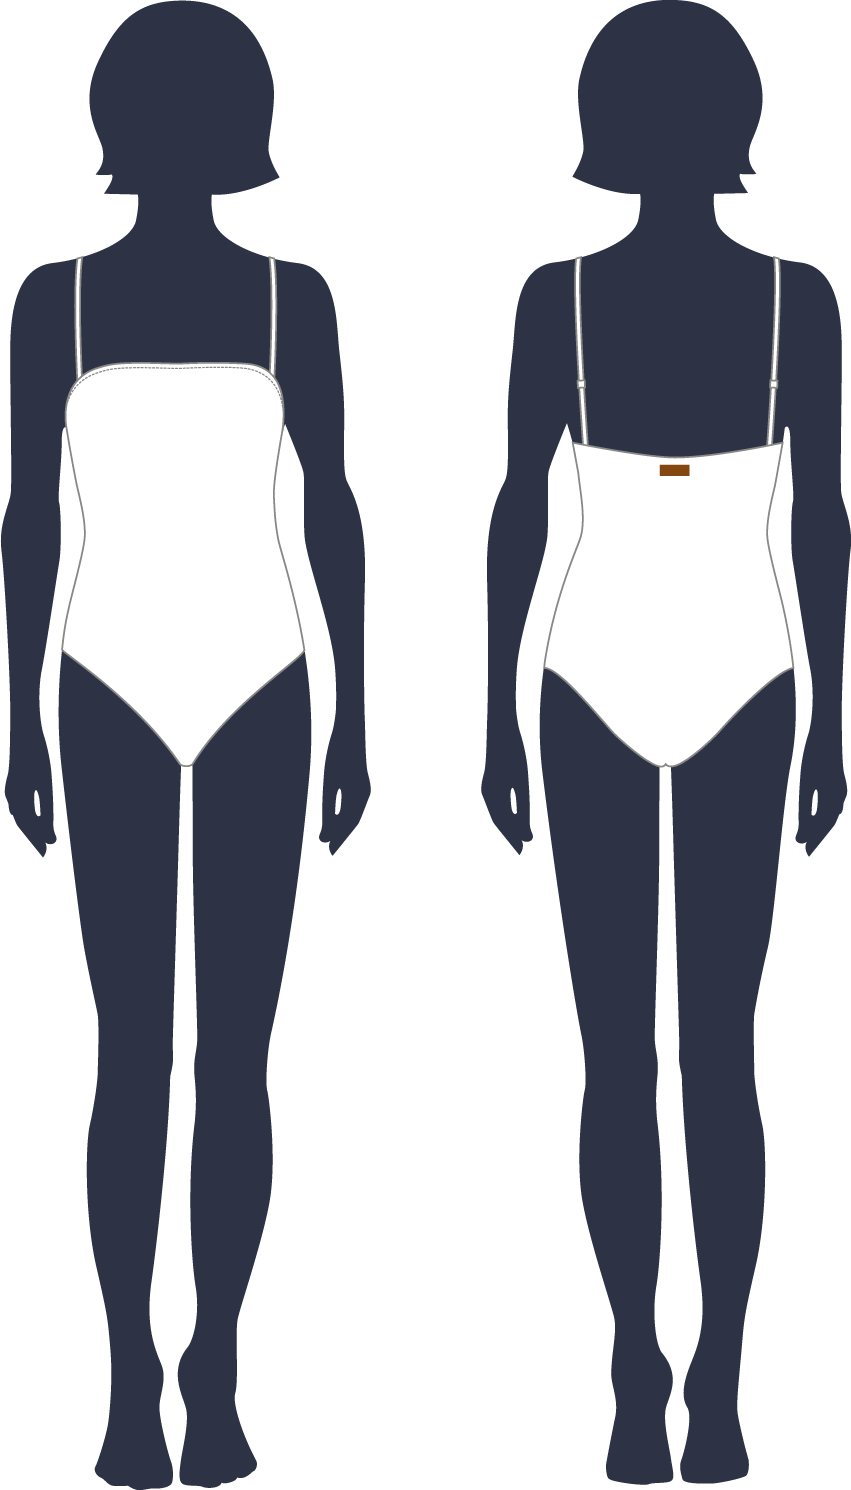 Women bustier one piece swimsuit